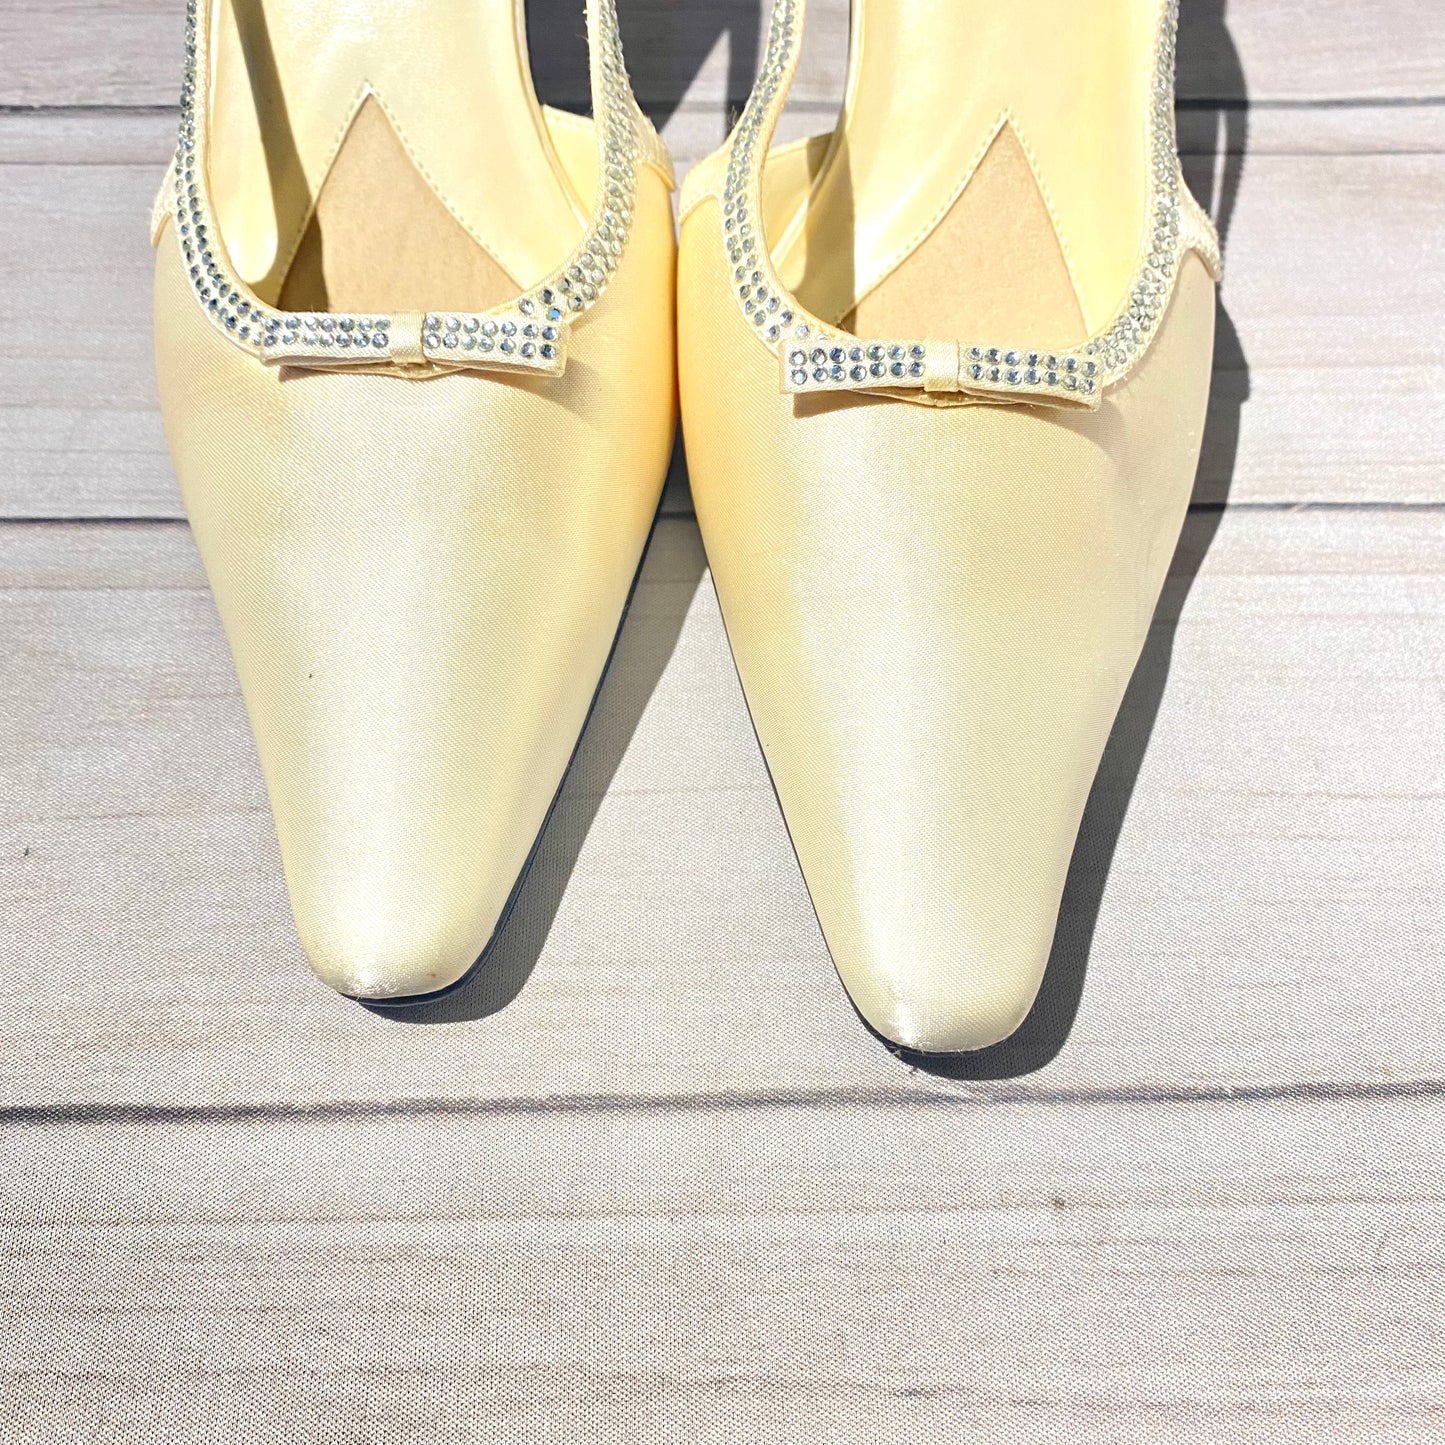 Shoes Heels Stiletto By Karen Scott  Size: 9